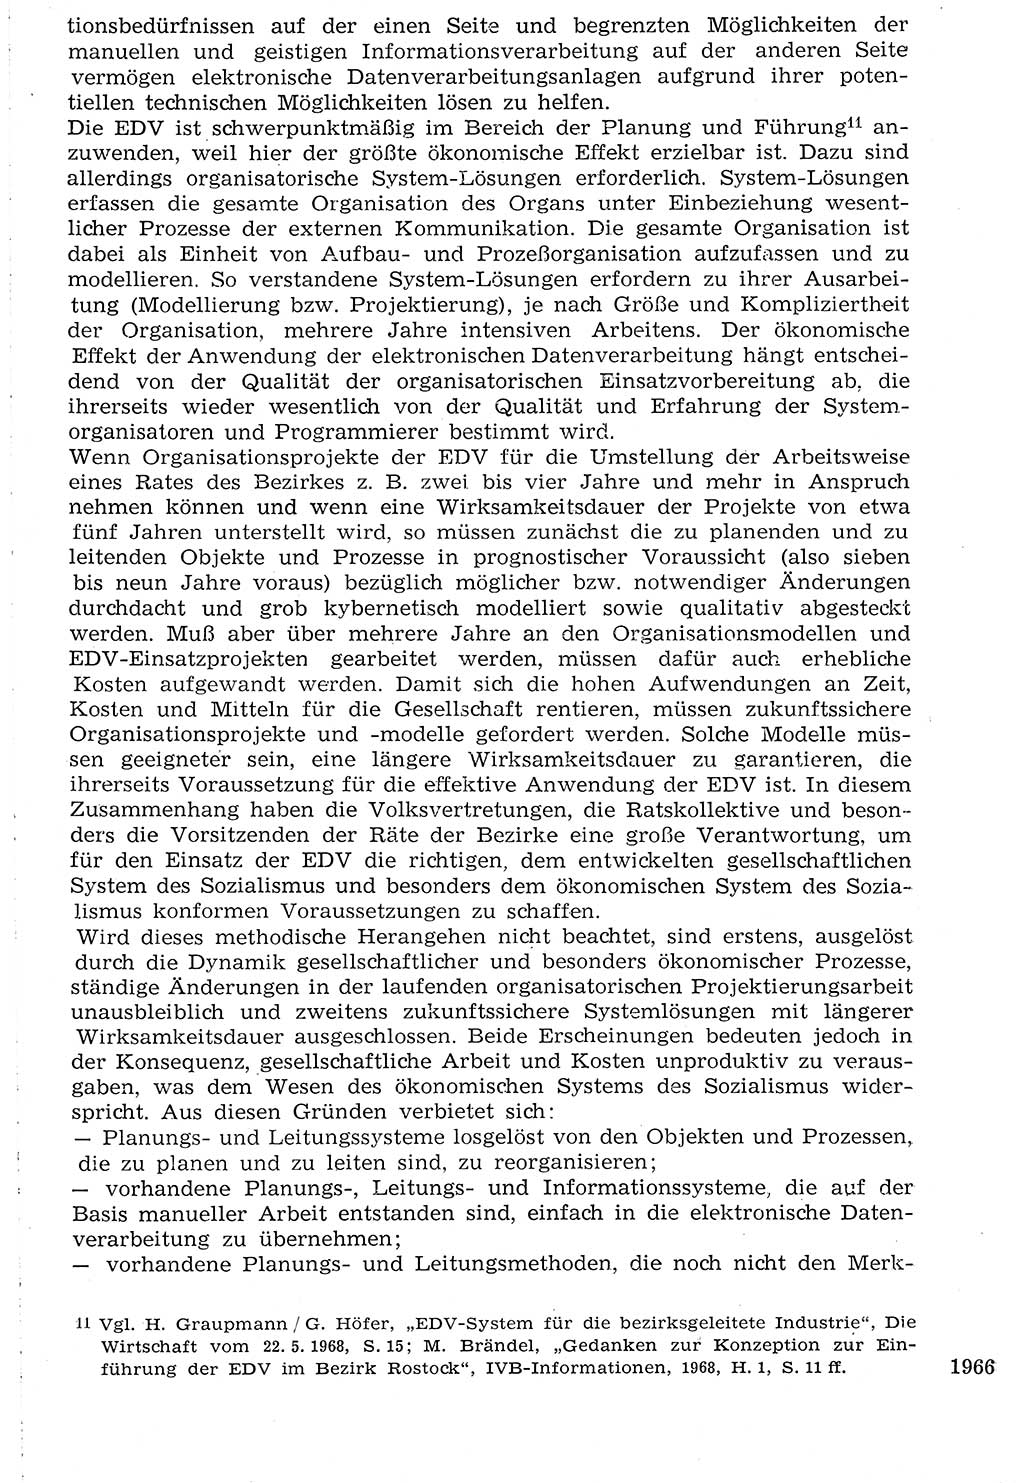 Staat und Recht (StuR), 17. Jahrgang [Deutsche Demokratische Republik (DDR)] 1968, Seite 1966 (StuR DDR 1968, S. 1966)